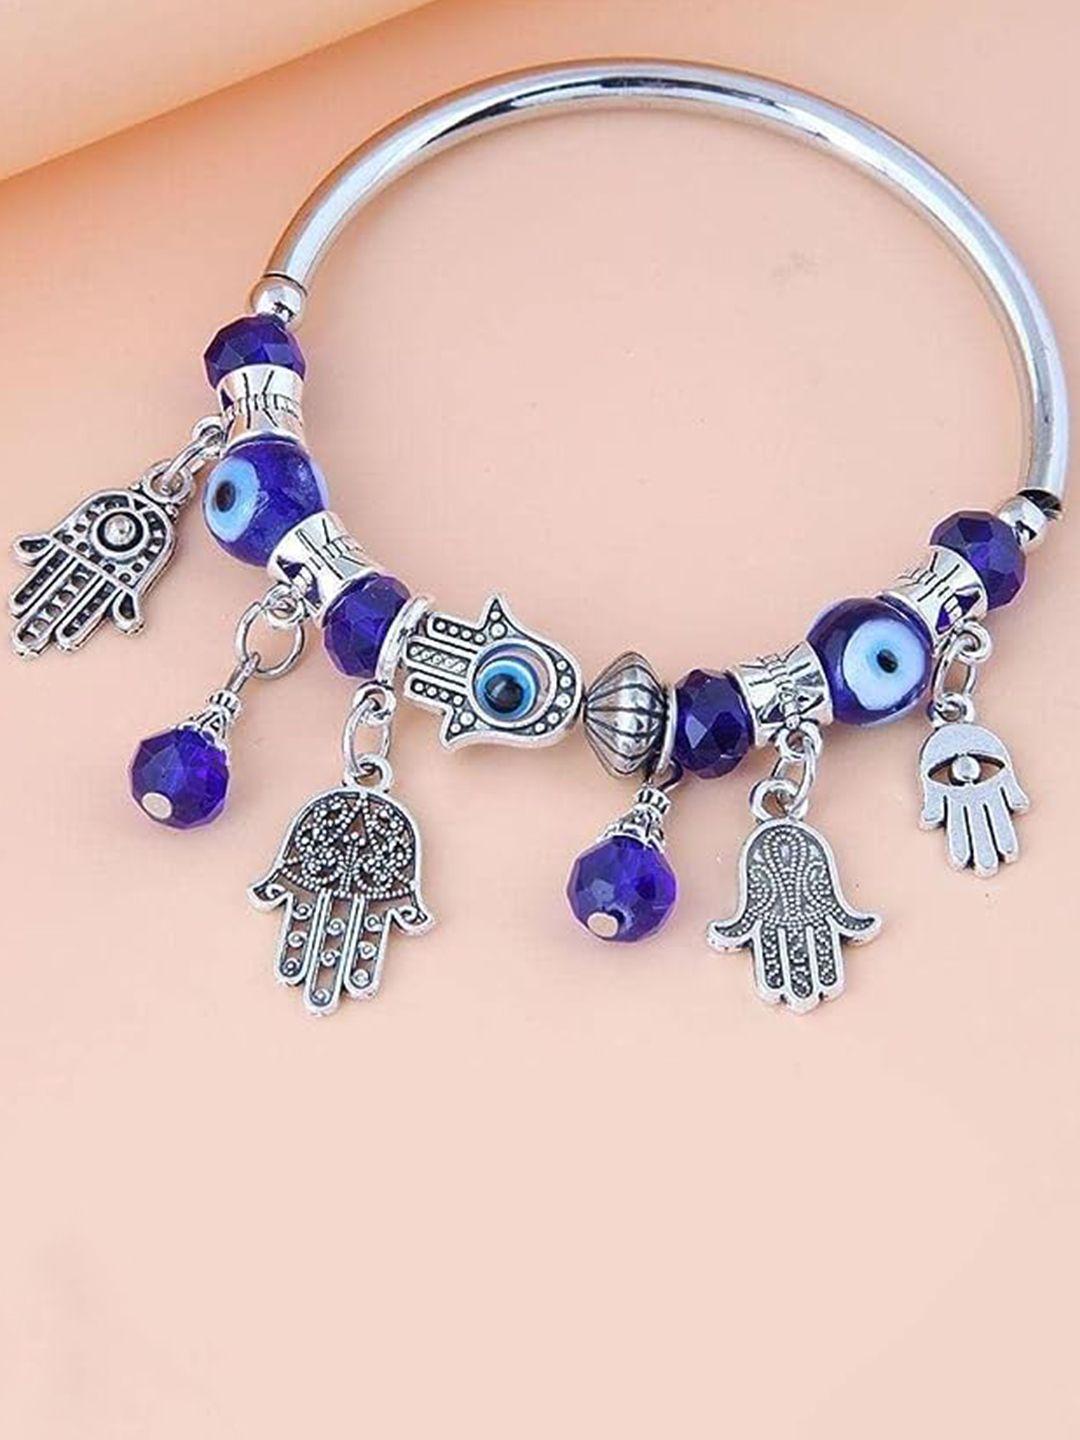 krystalz women silver-plated charm bracelet